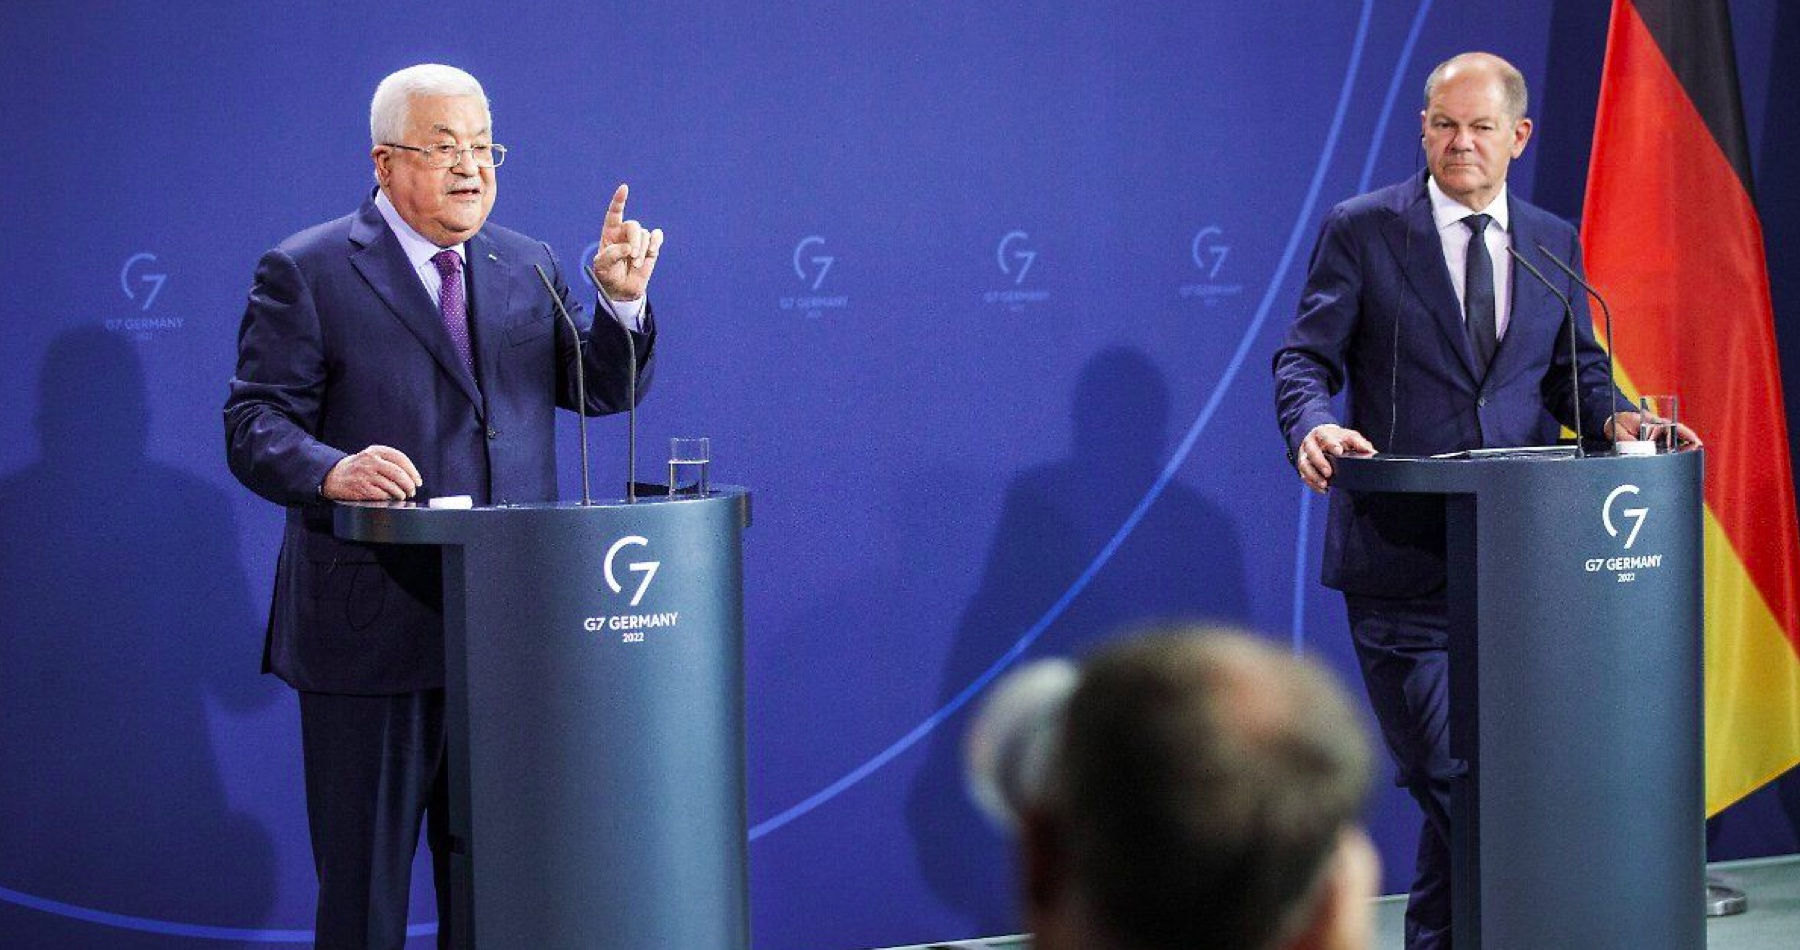 VIDEO: Prezident Mahmúd Abbás na tiskovce s německým kancléřem Olafem Scholzem obvinil Izrael z páchání  „holocaustu“ proti Palestincům 